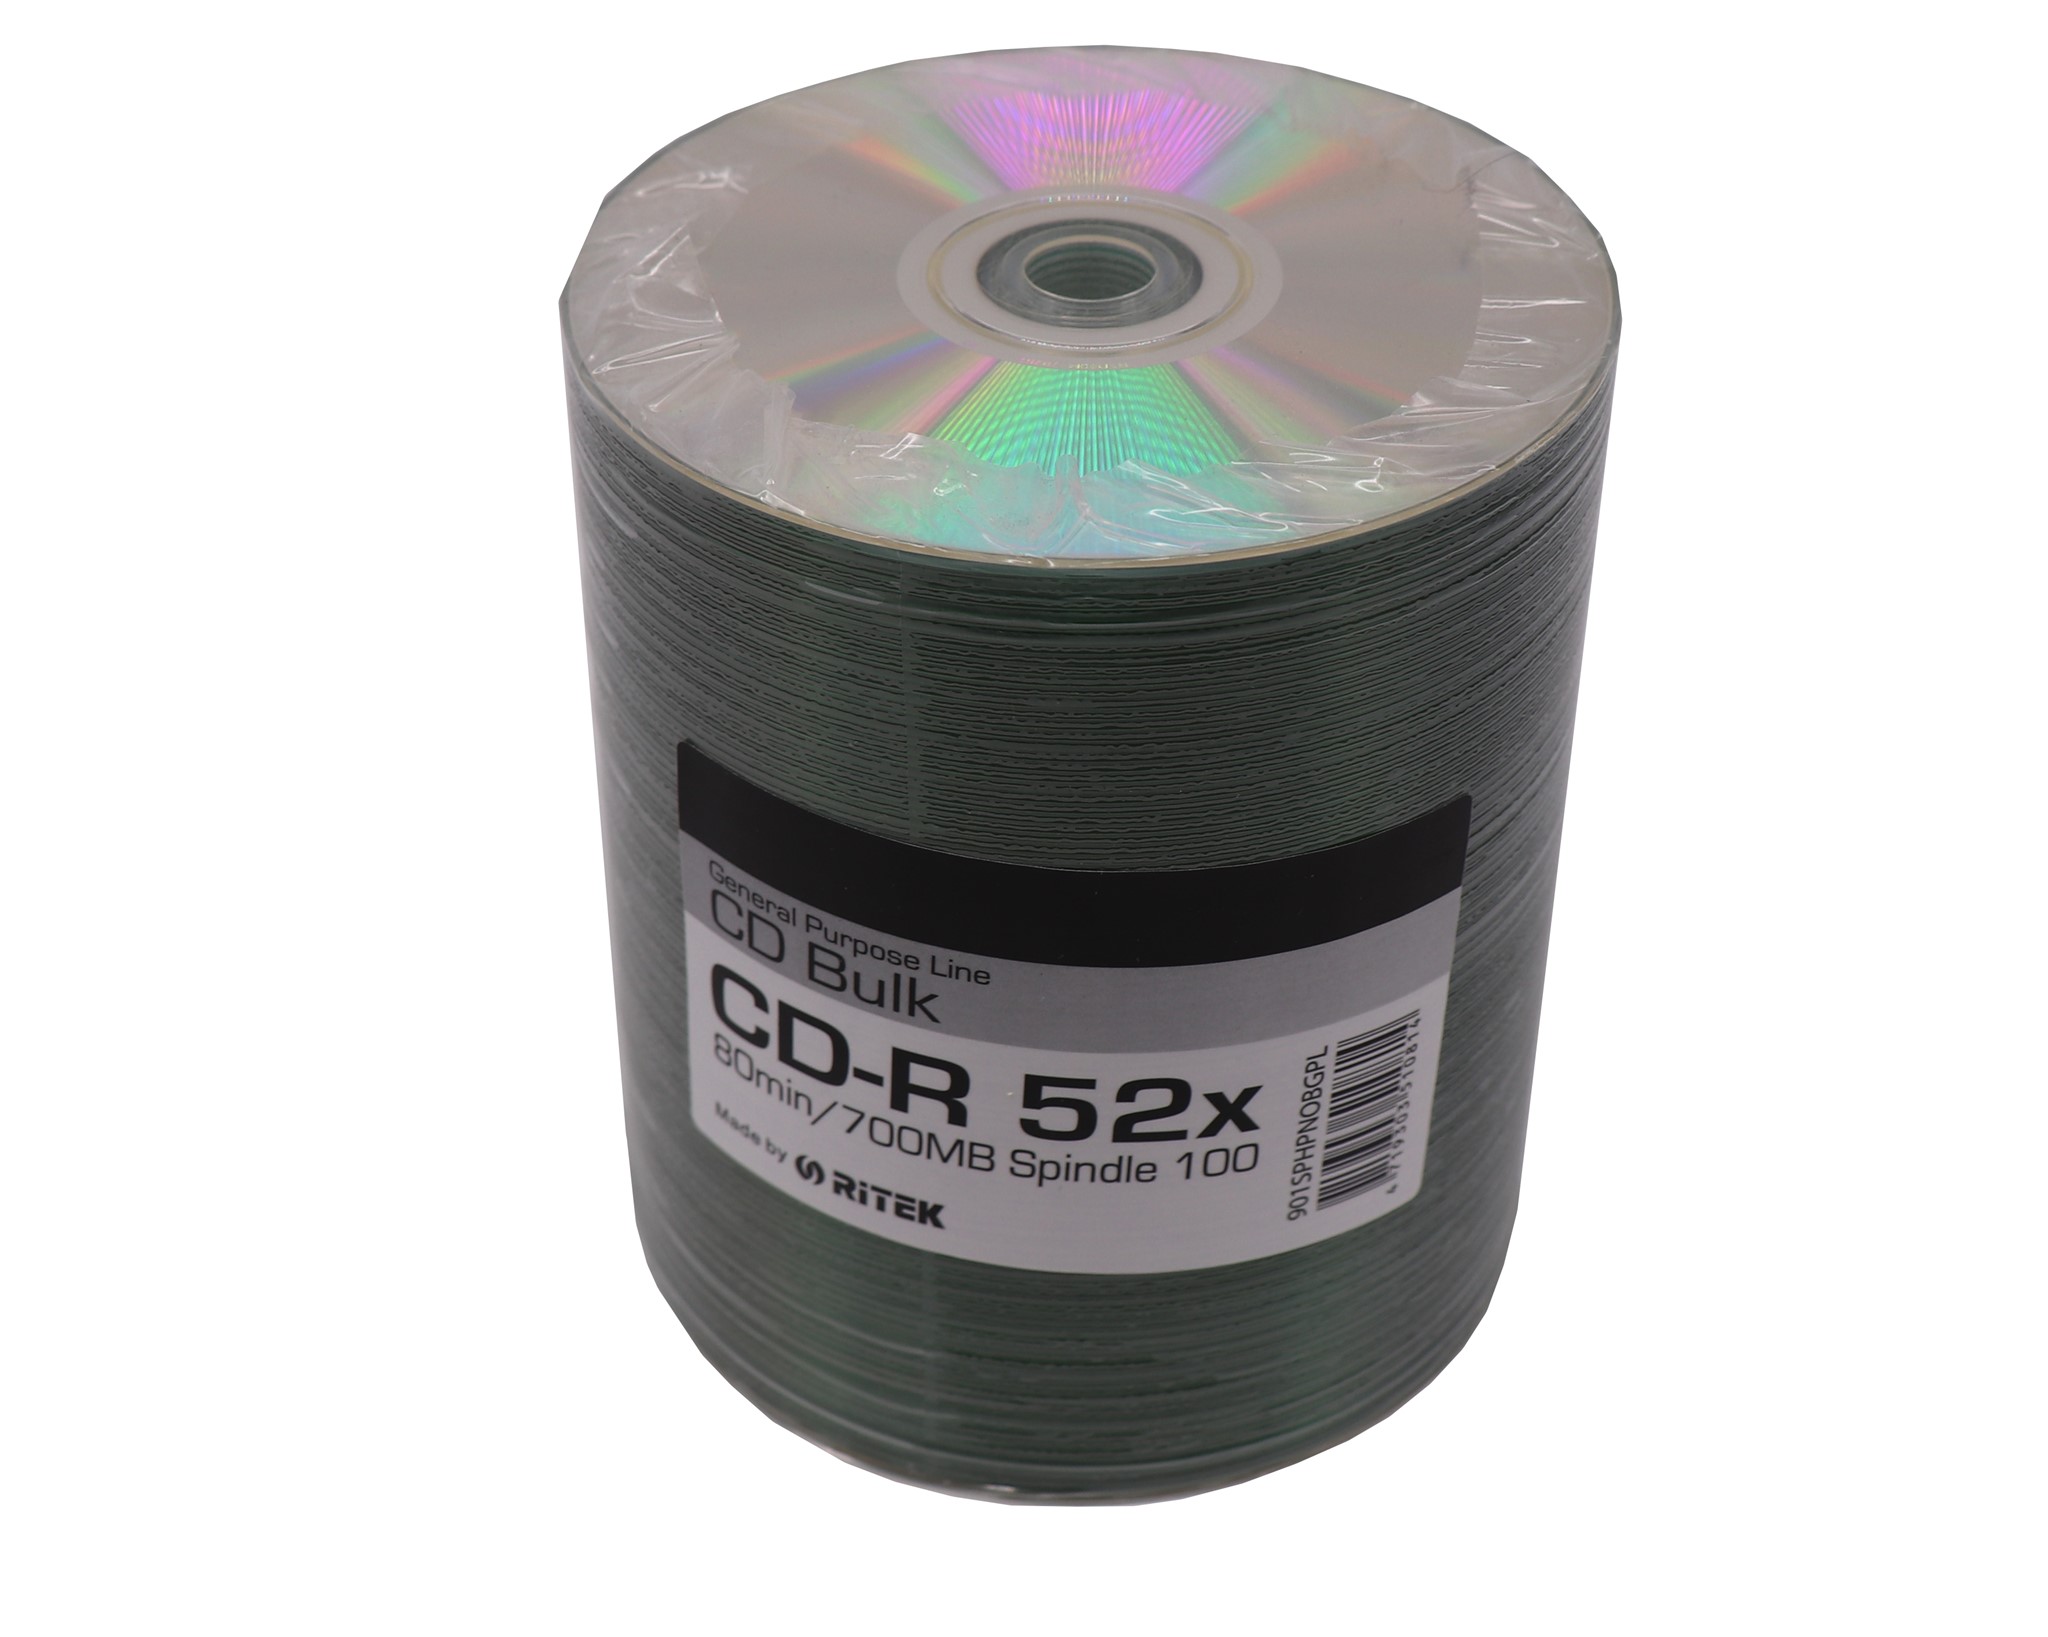 CD-Rブランク RITEKプリンタブル、25mmサーモシルバーの画像